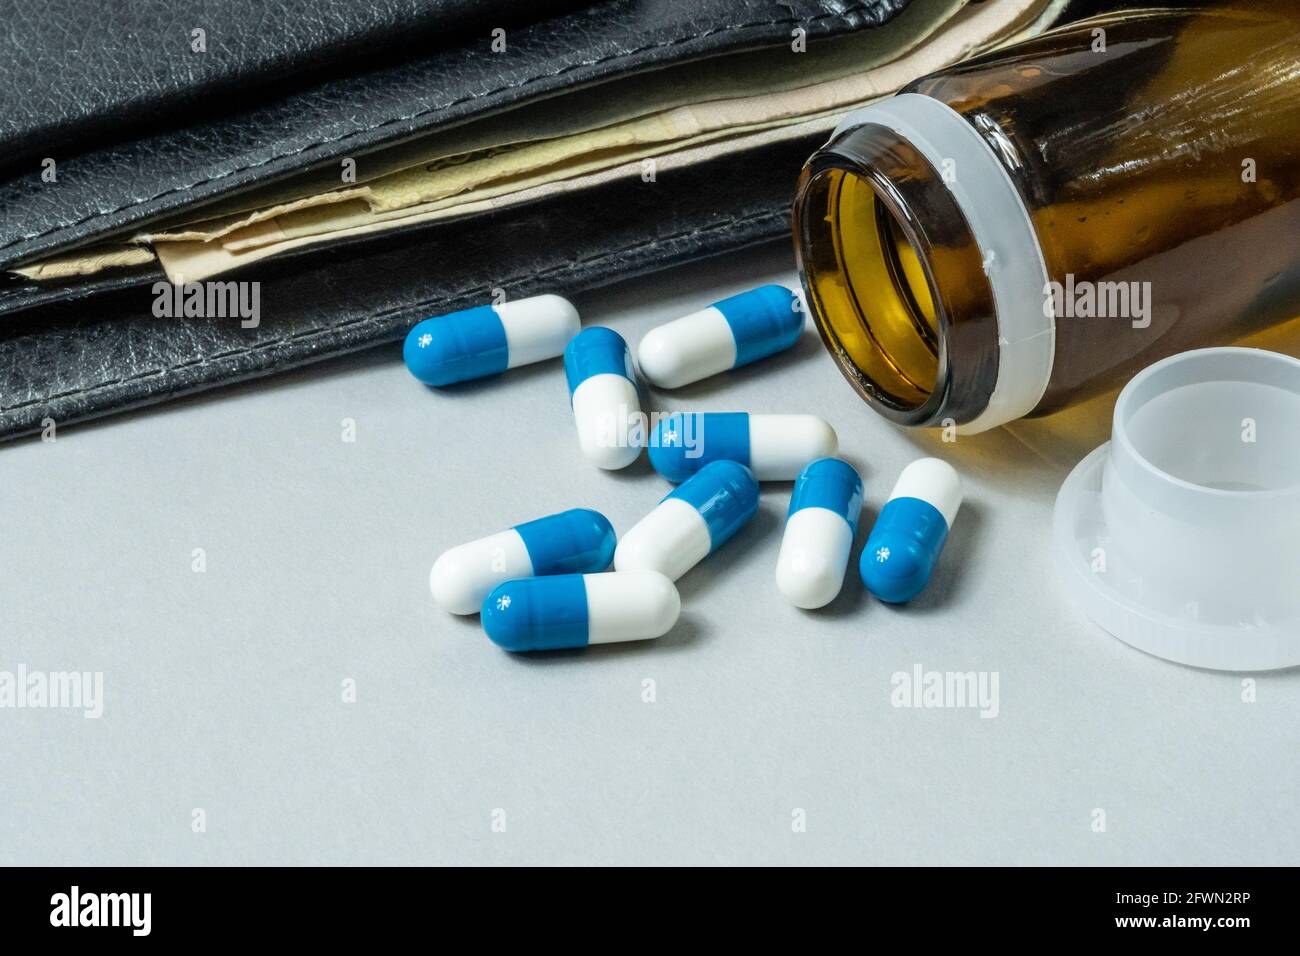 Pilules médicales dispersées sur la table contre le fond d'un portefeuille avec de l'argent. Banque D'Images